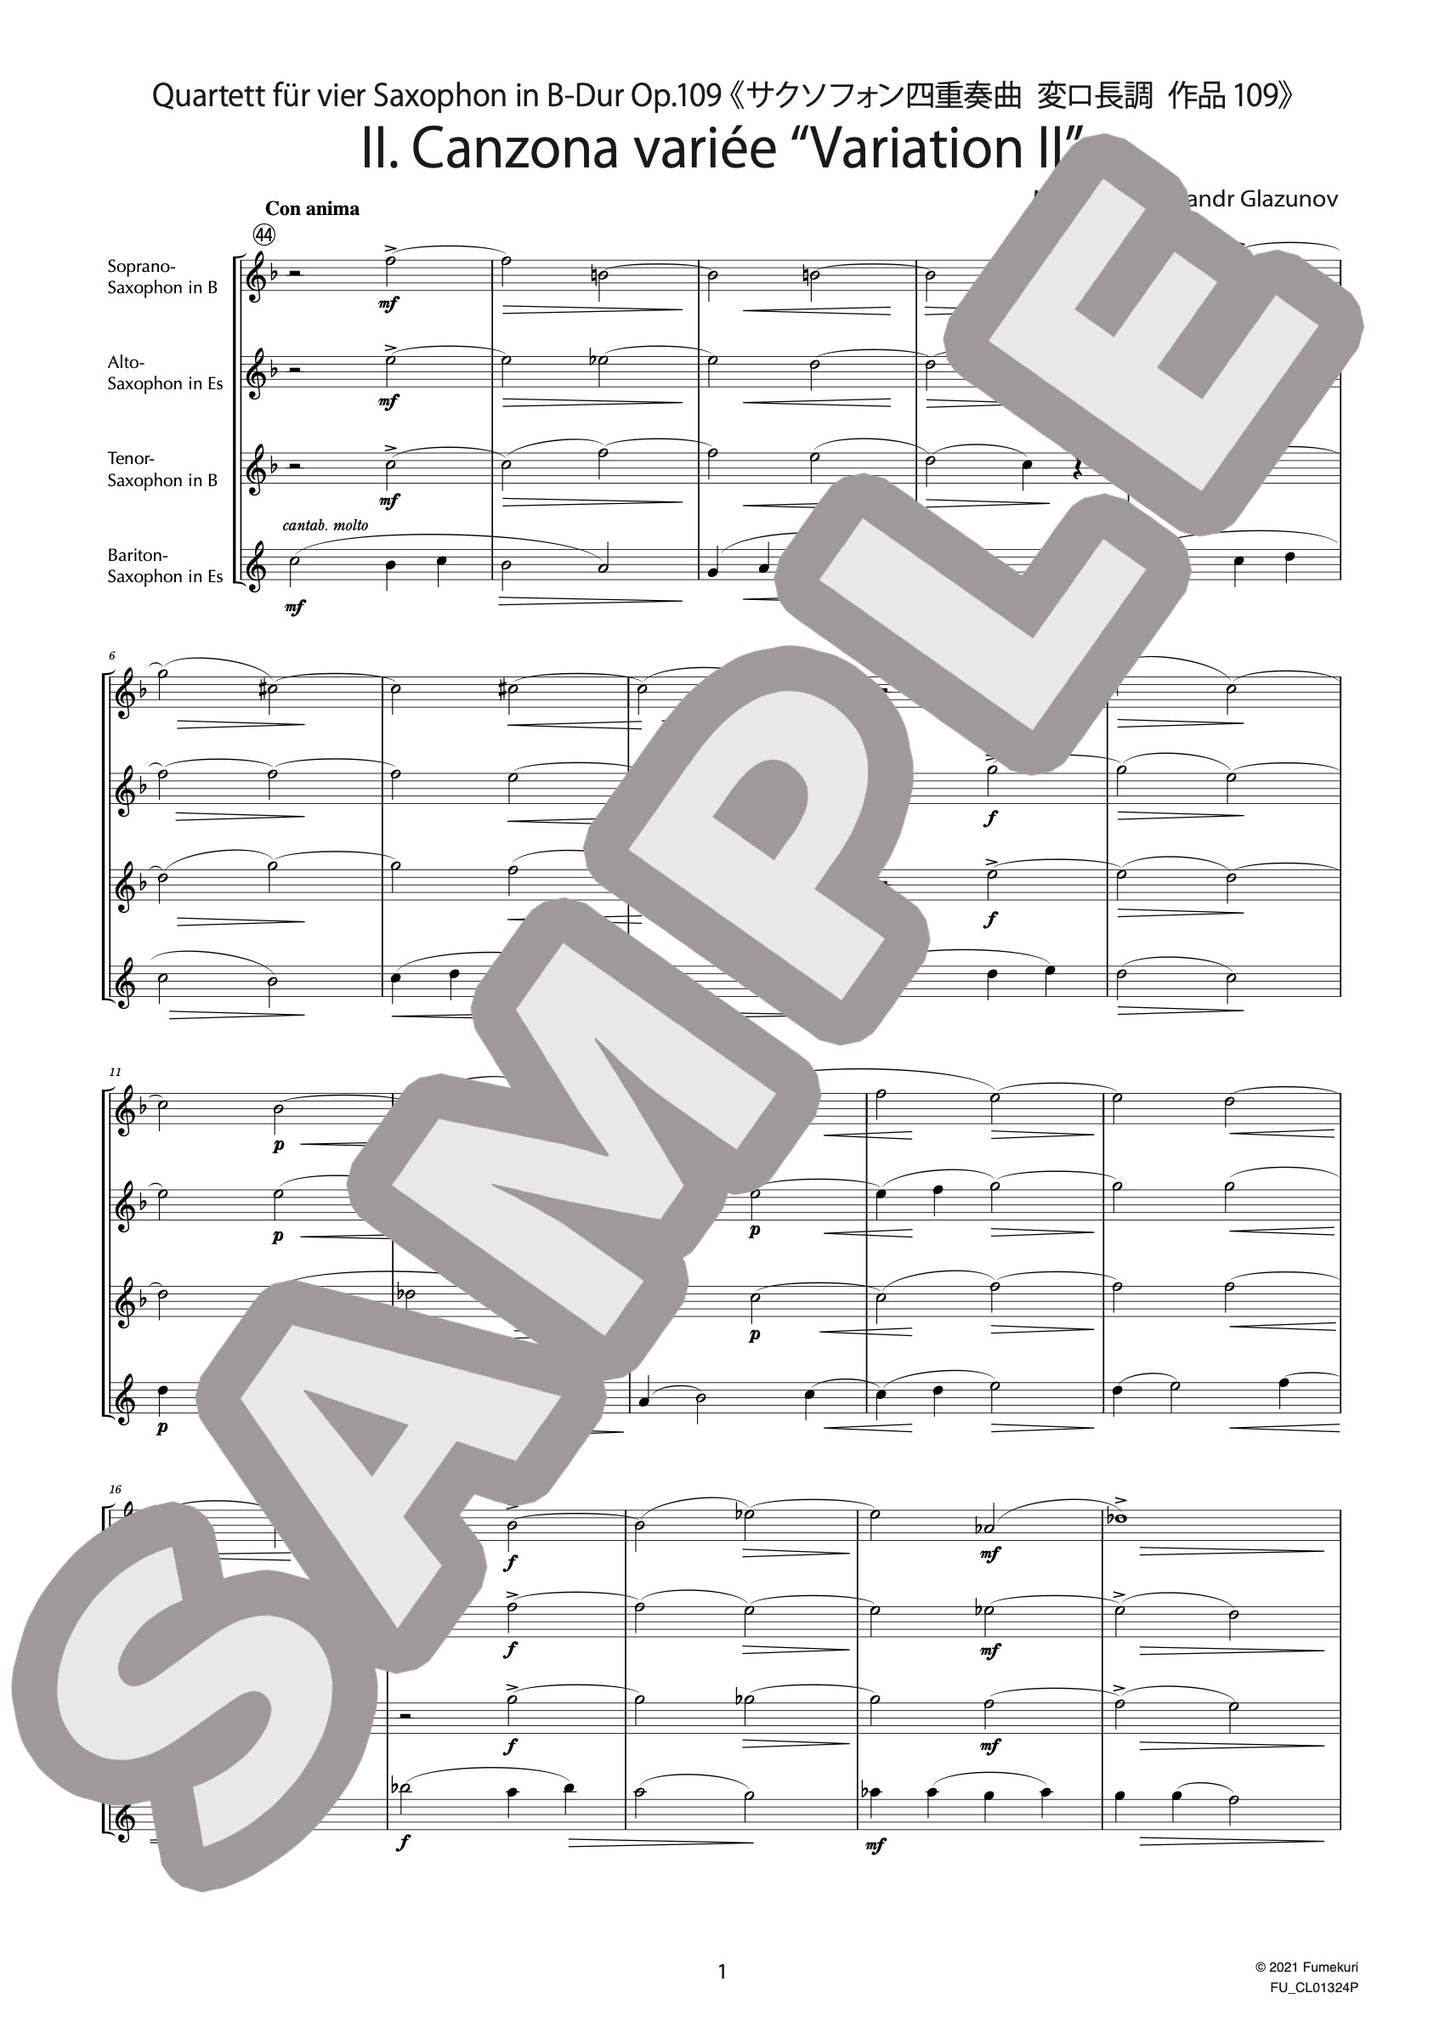 サクソフォン四重奏曲 変ロ長調 作品109 II. Canzona variée “Variation II”（GLASUNOW) / クラシック・オリジナル楽曲【中上級】